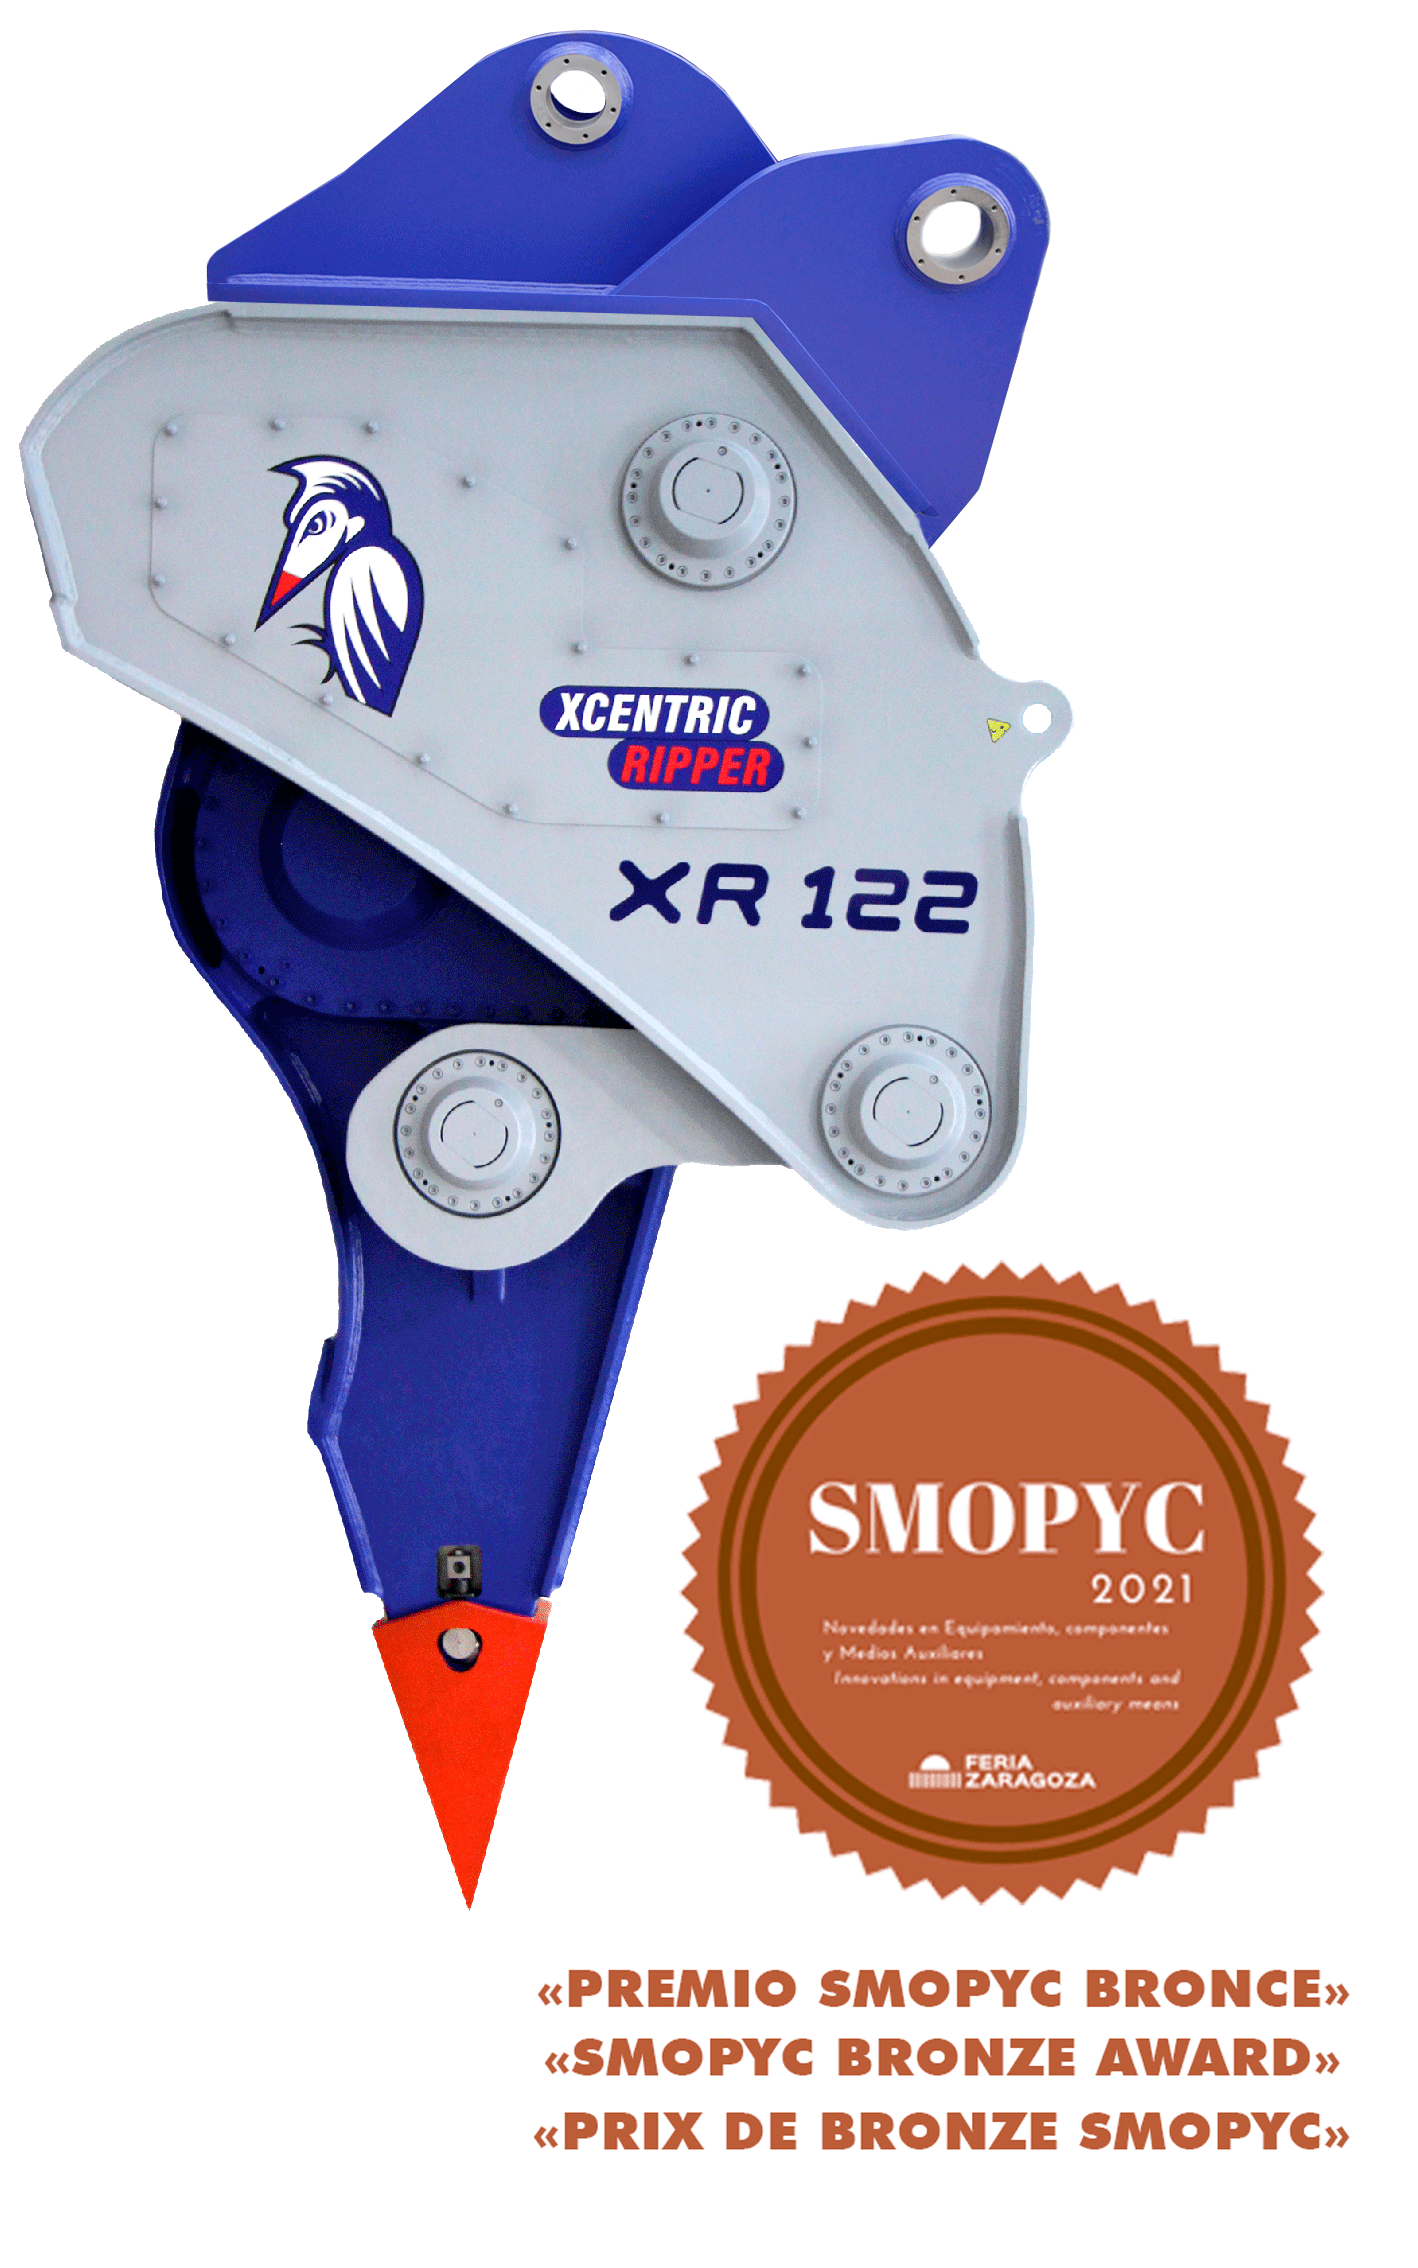 XCENTRIC RIPPER XR122 PRIX DE BRONZE SMOPYC 2021